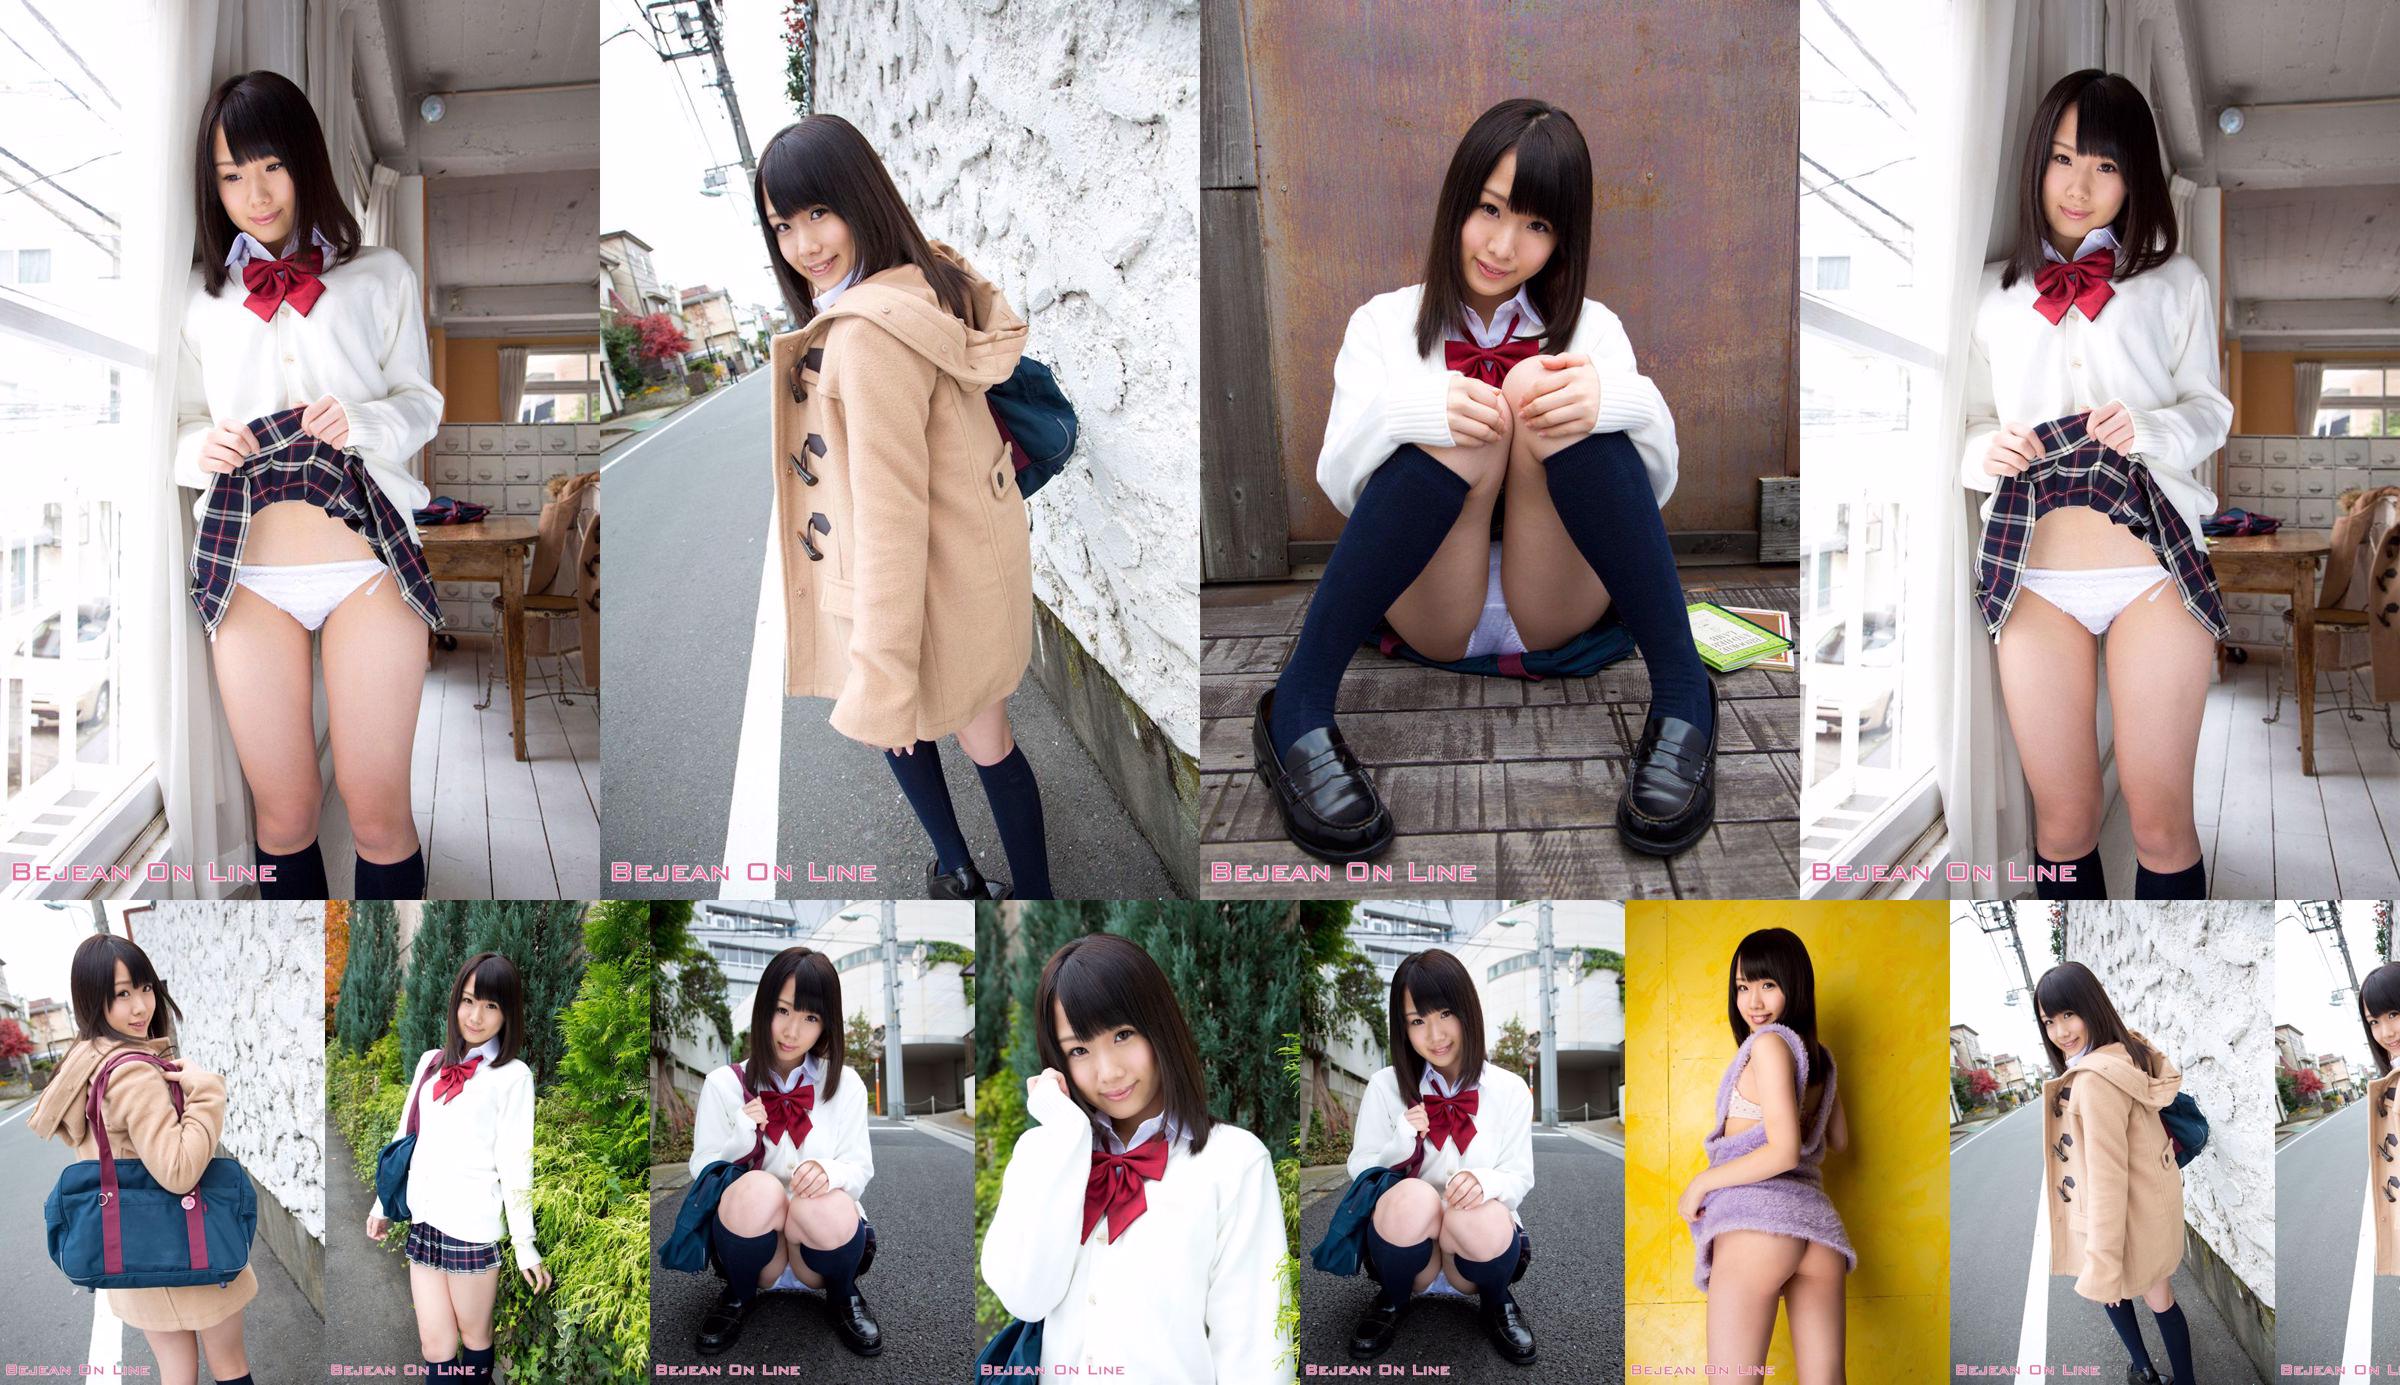 第一照片美女Ami Hyakutake Ami Hyakutake / Ami Hyakutake [Bejean On Line] No.5437f2 第2頁